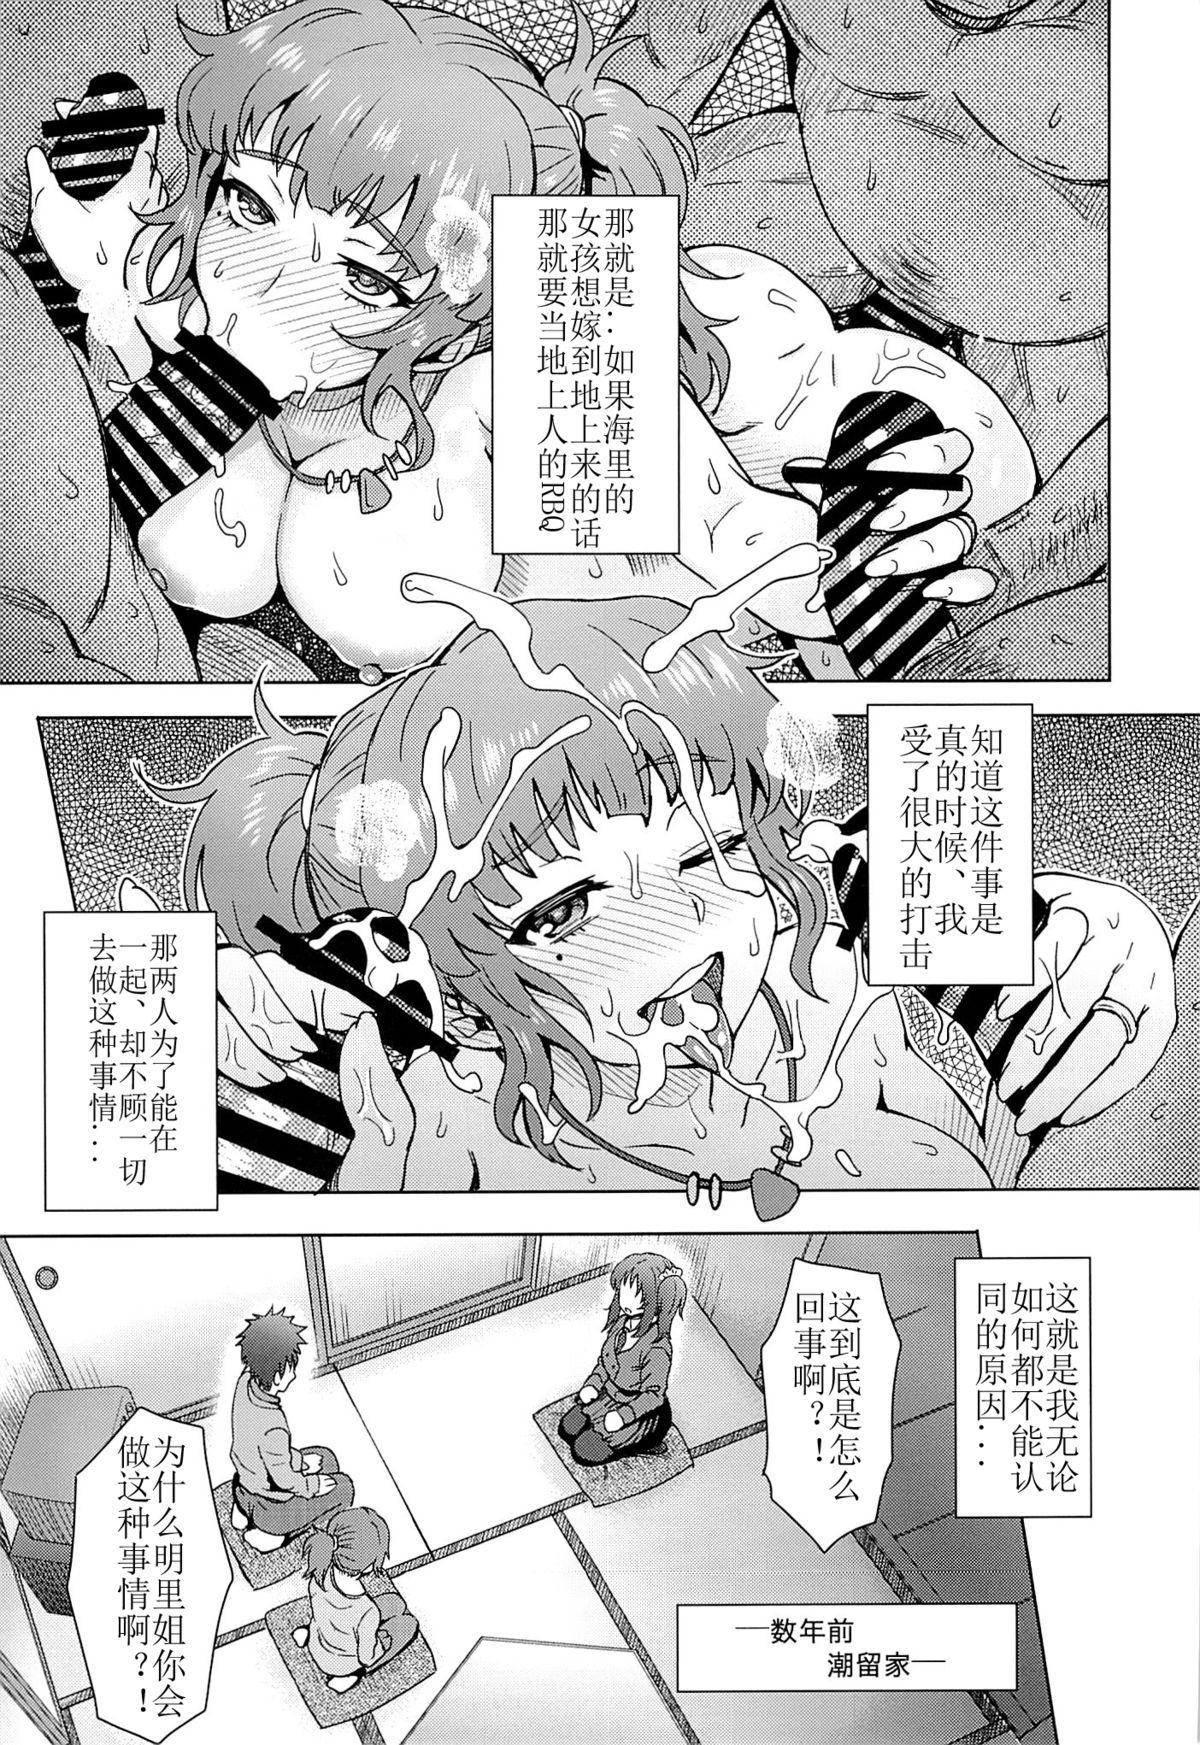 Adorable Watashi dake ga Shiawase ni Naccha Ikenai Riyuu... - Nagi no asukara Fetish - Page 6